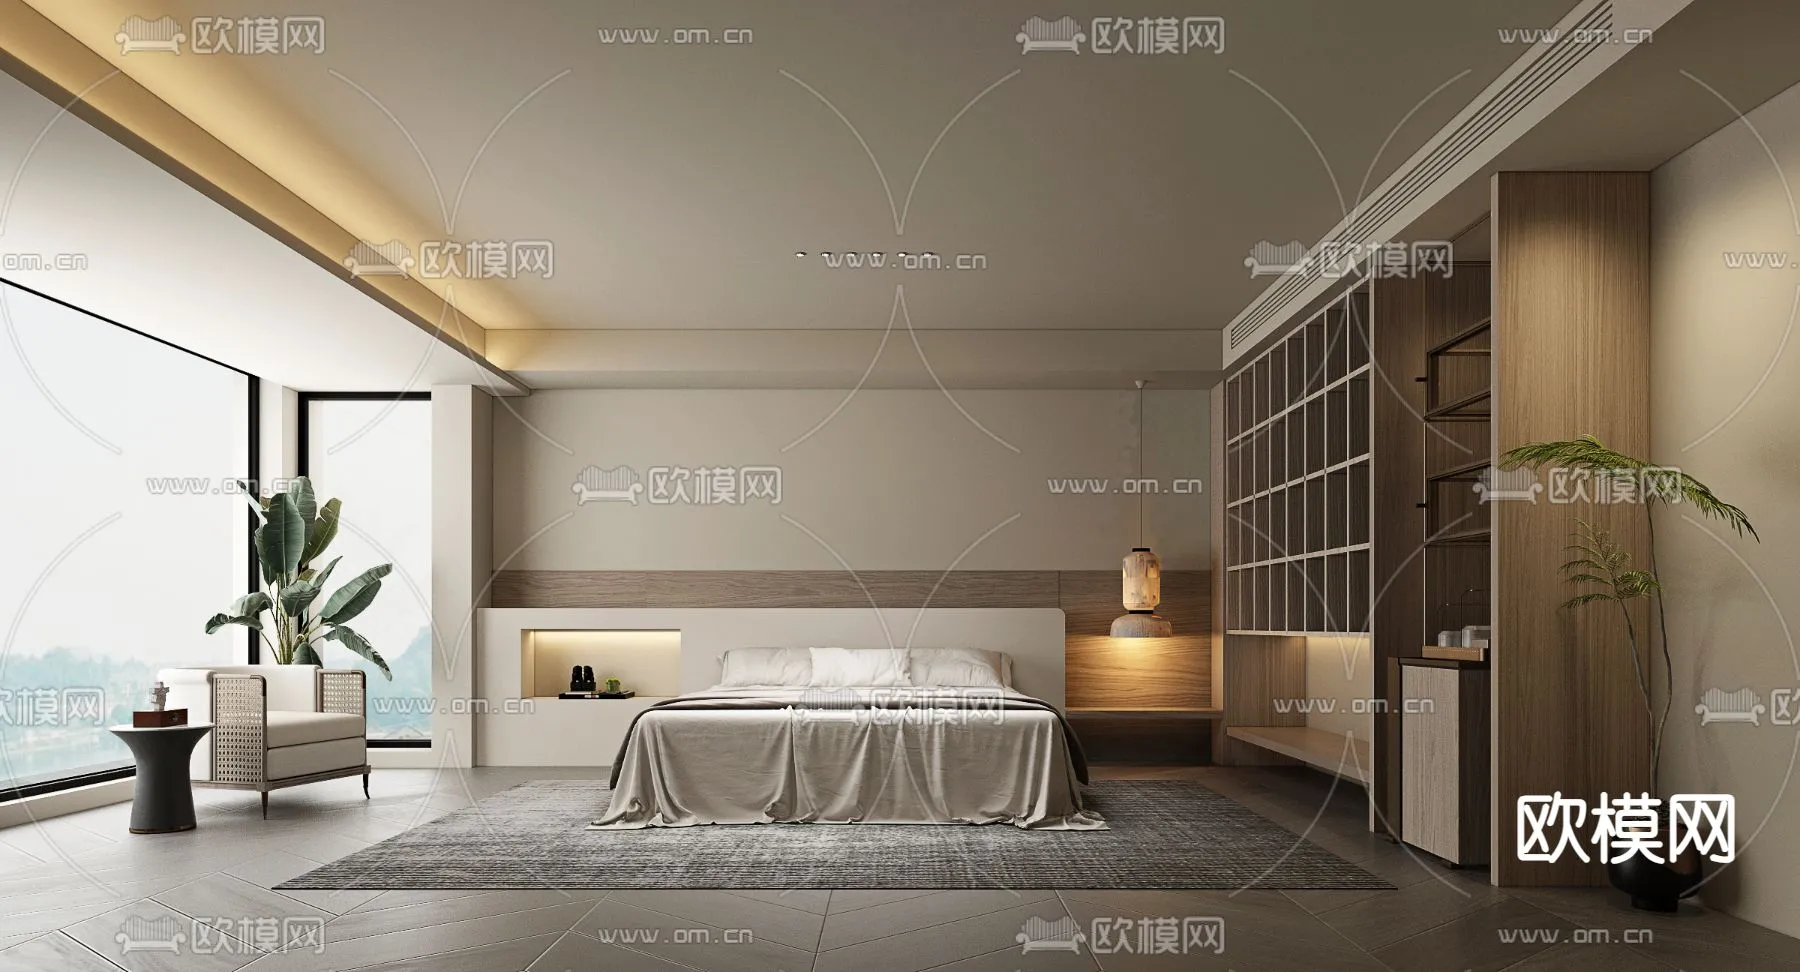 Hotel Room – Bedroom For Hotel 3D Models – 005